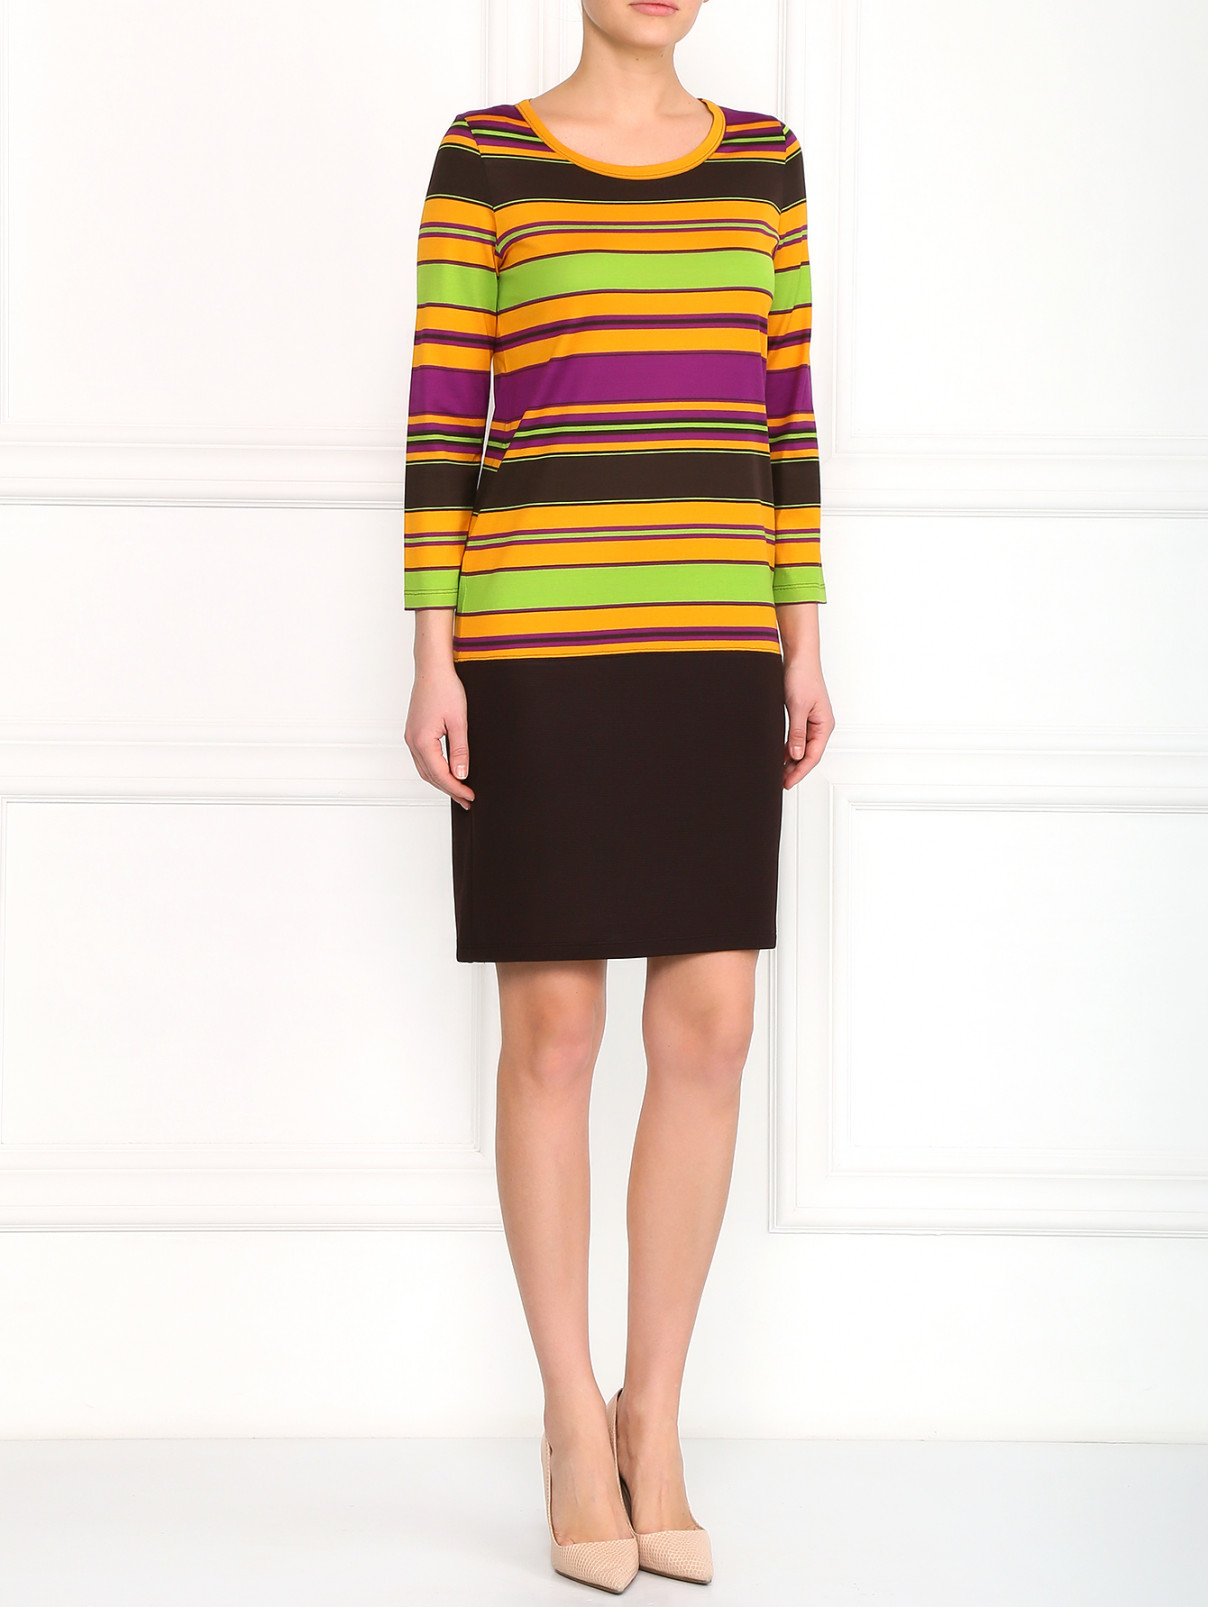 Трикотажное платье из хлопка с узором Moschino Cheap&Chic  –  Модель Общий вид  – Цвет:  Коричневый